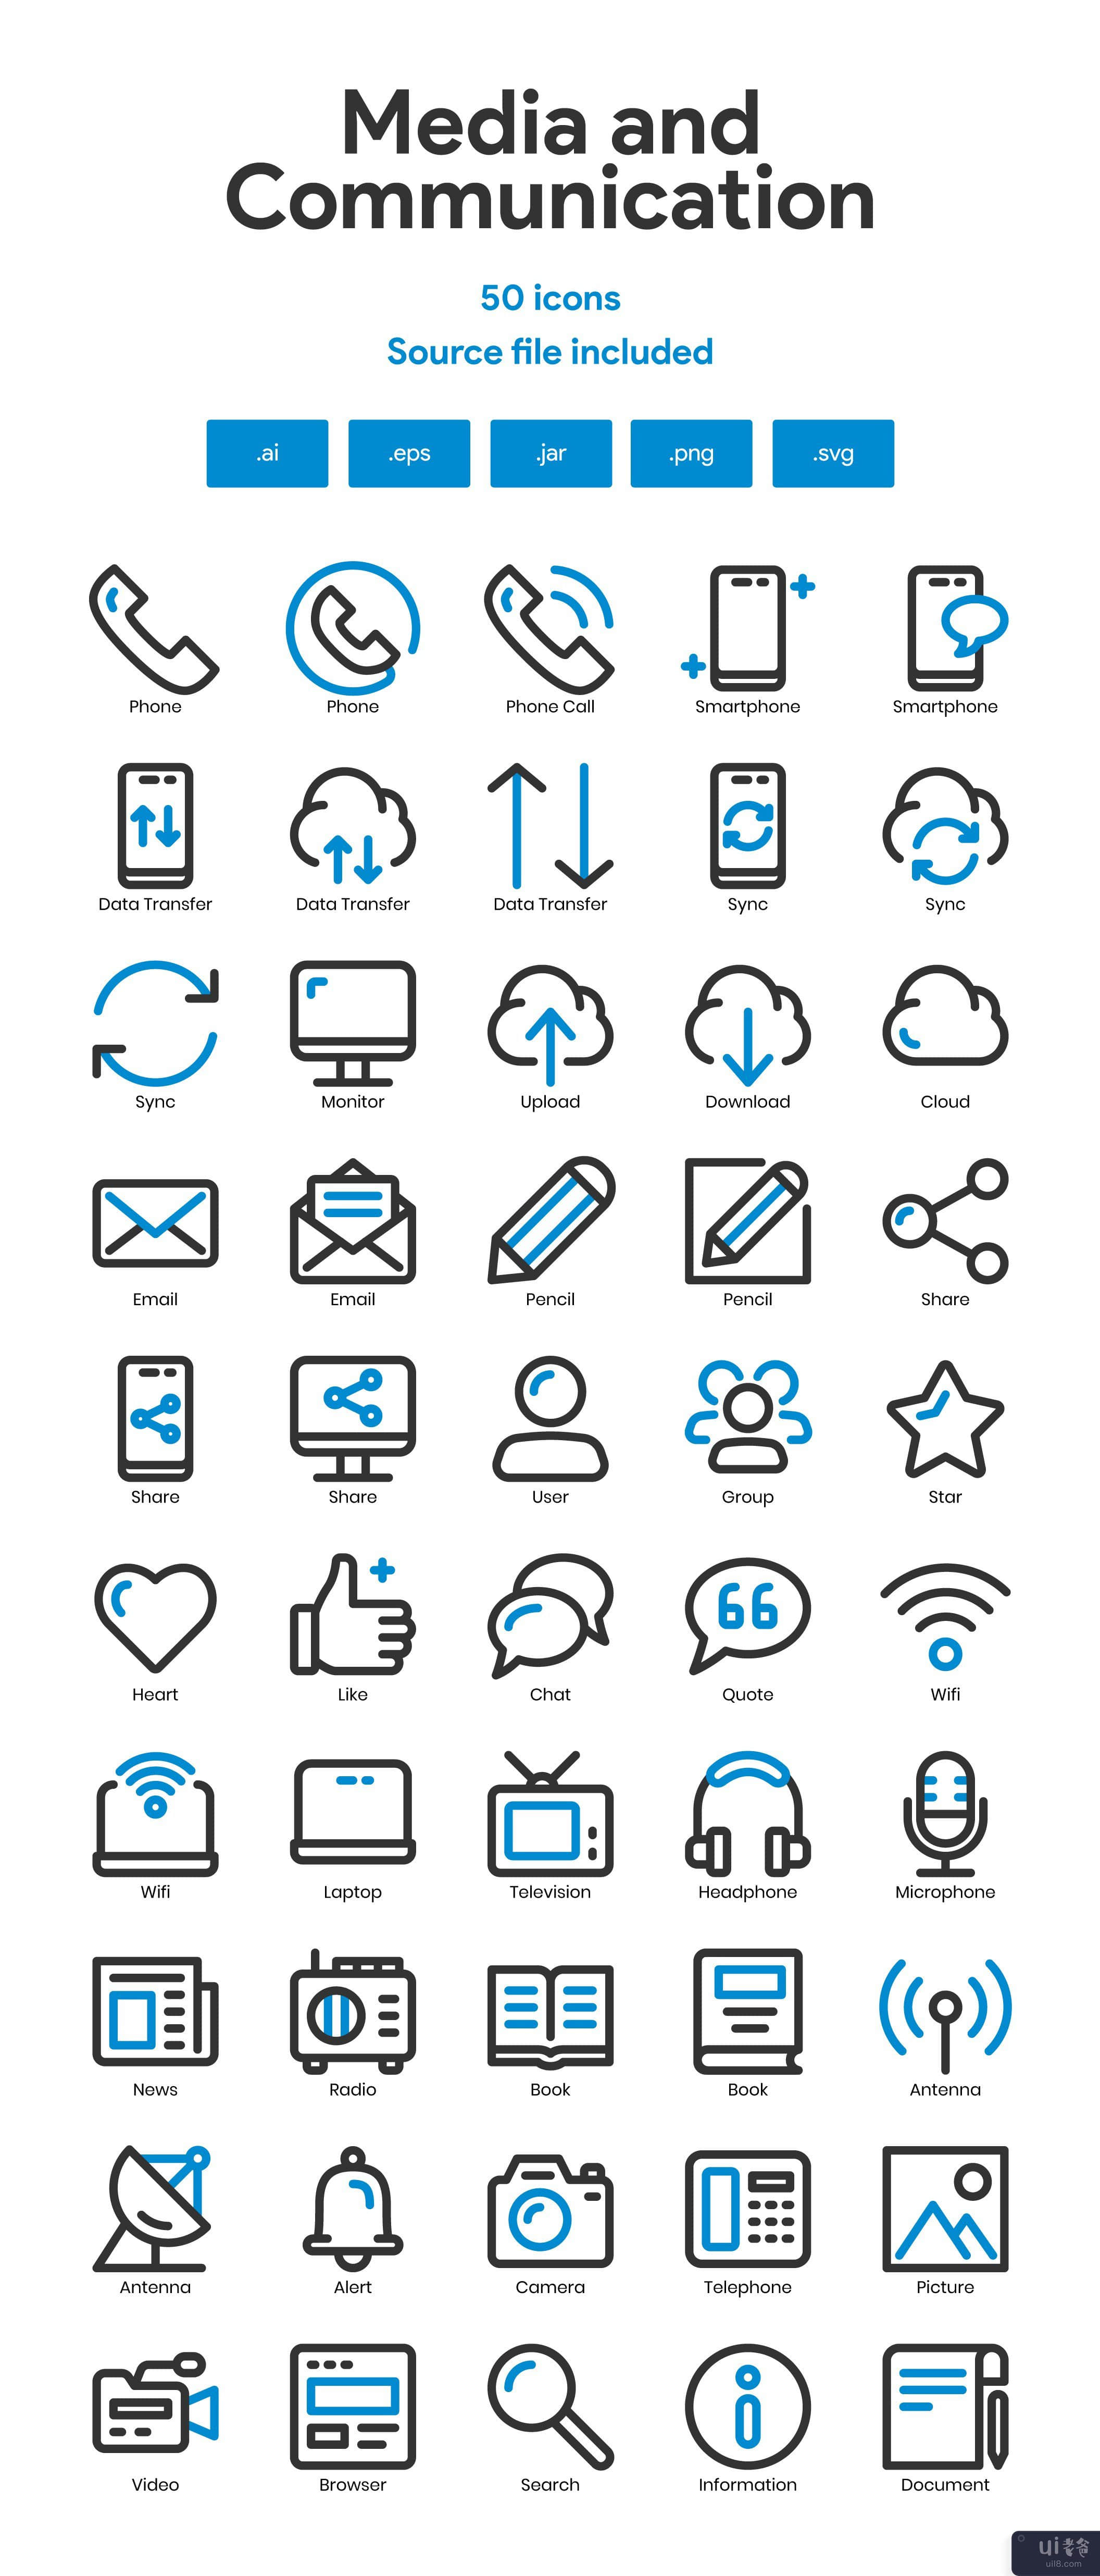 媒体和通信图标集(Media and Communication Icon Set)插图